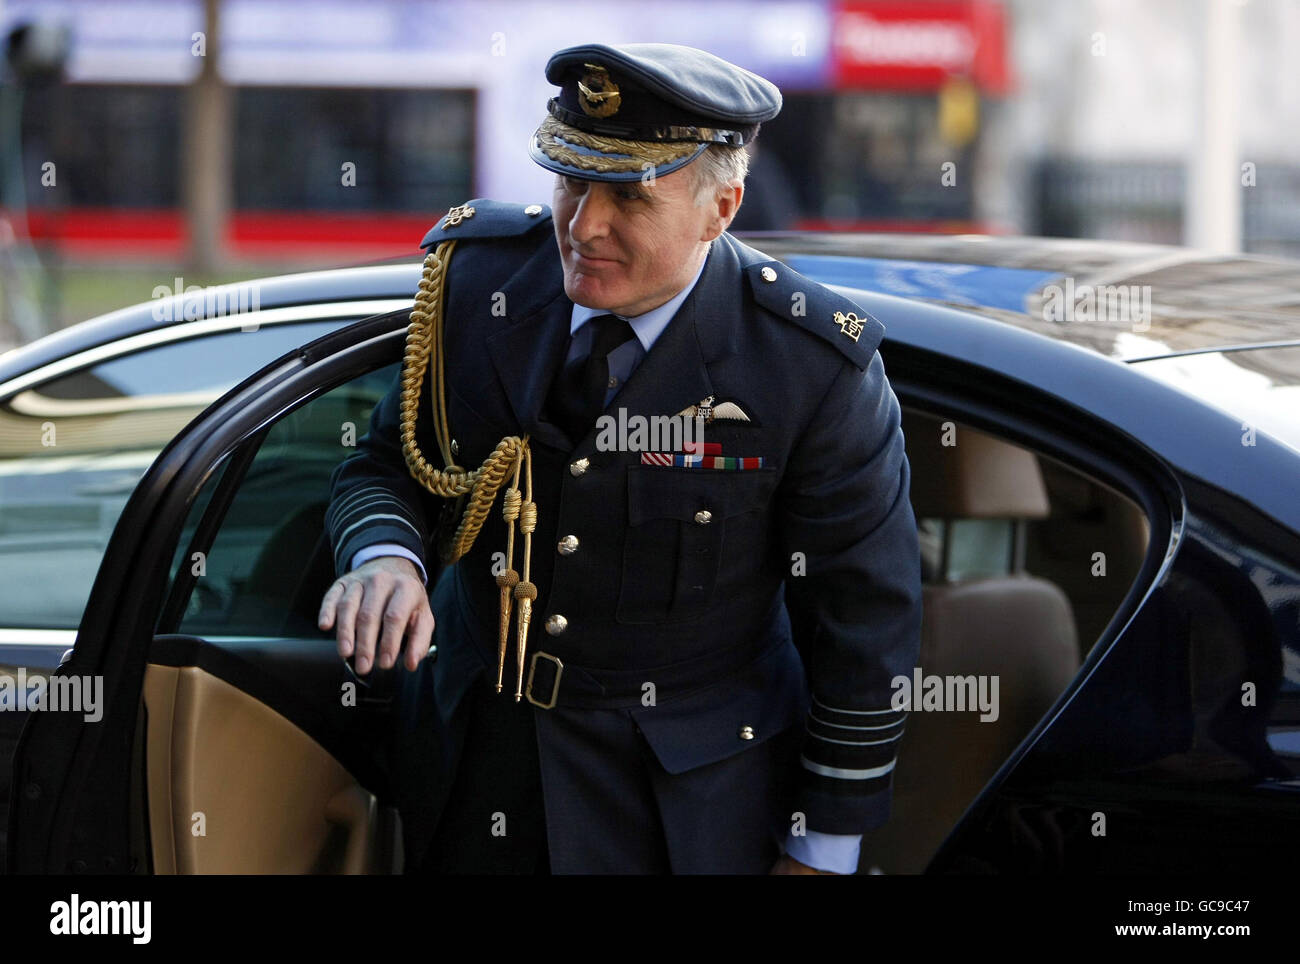 Le chef des forces armées, le maréchal en chef de l'air Sir Jock Stirrup, arrive au centre de conférence Queen Elizabeth II de Londres, où il fournira des preuves à l'enquête sur l'Irak. Banque D'Images